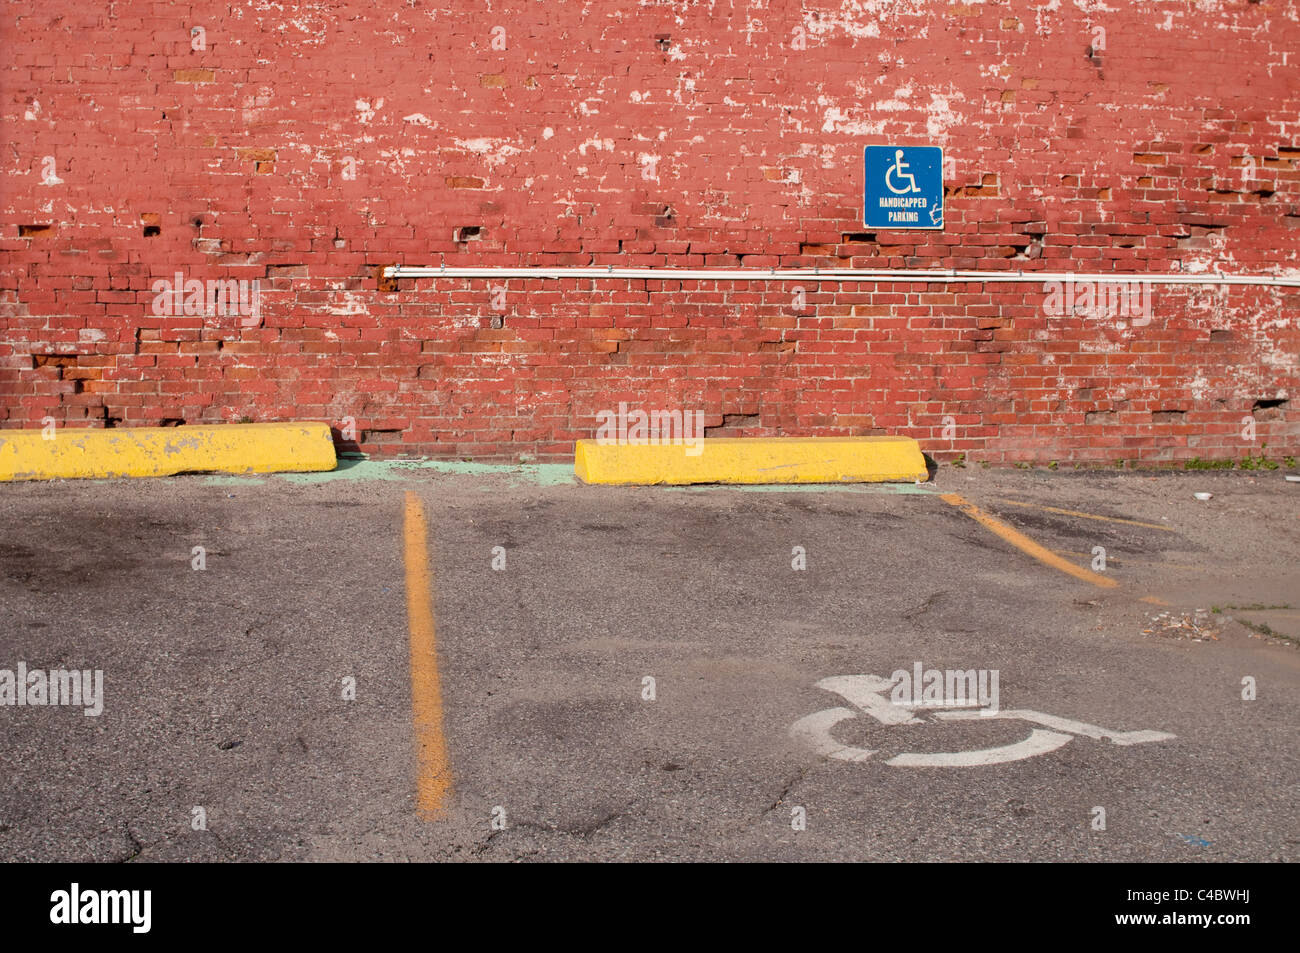 Discapacitados/estacionamiento para discapacitados en los EE.UU. contra una pared de ladrillos en un parking. Foto de stock